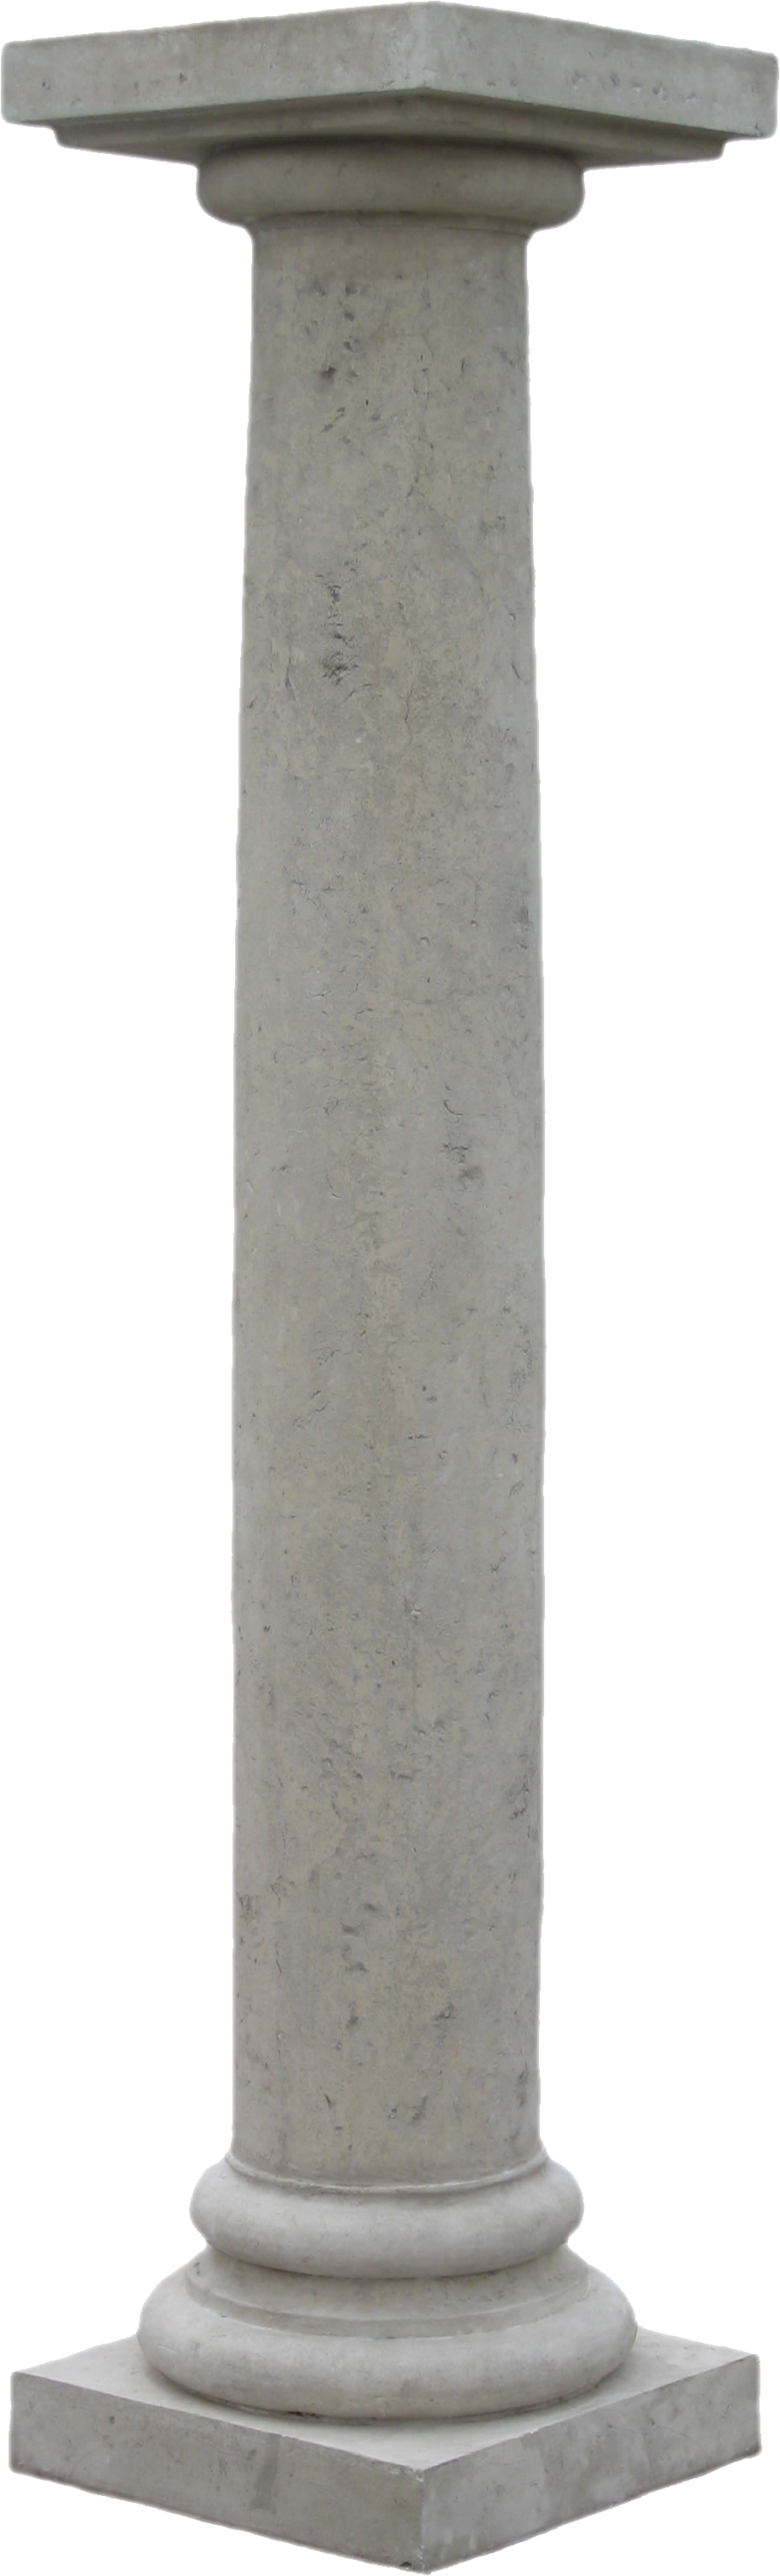 Ancient Building Pillar Transparent Image